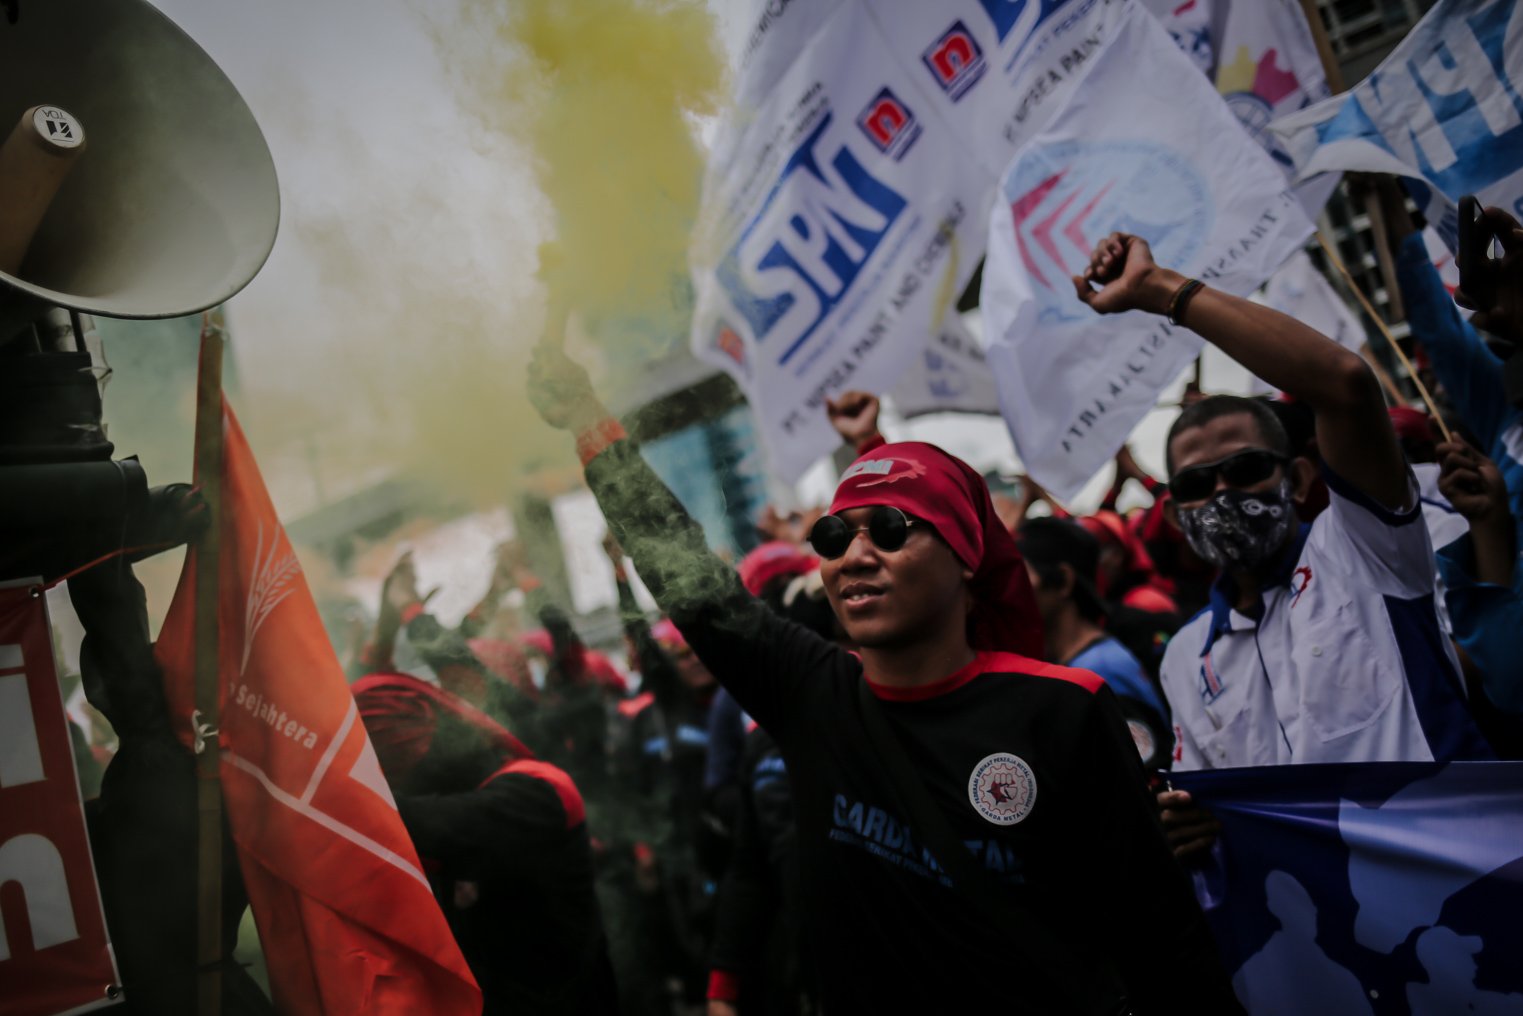 Sejumlah buruh dari berbagai serikat melakukan aksi unjuk rasa di depan Kantor Kementerian Ketenagakerjaan, Jakarta, Jumat (19/11/2021). Massa aksi menuntut kepada Pemerintah untuk menaikan upah mininum sebesar 10 persen pada tahun 2022 dan segera mencabut Surat Edaran (SE) Menteri Ketenagakerjaan tentang penetapan upah minimum tahun 2022.